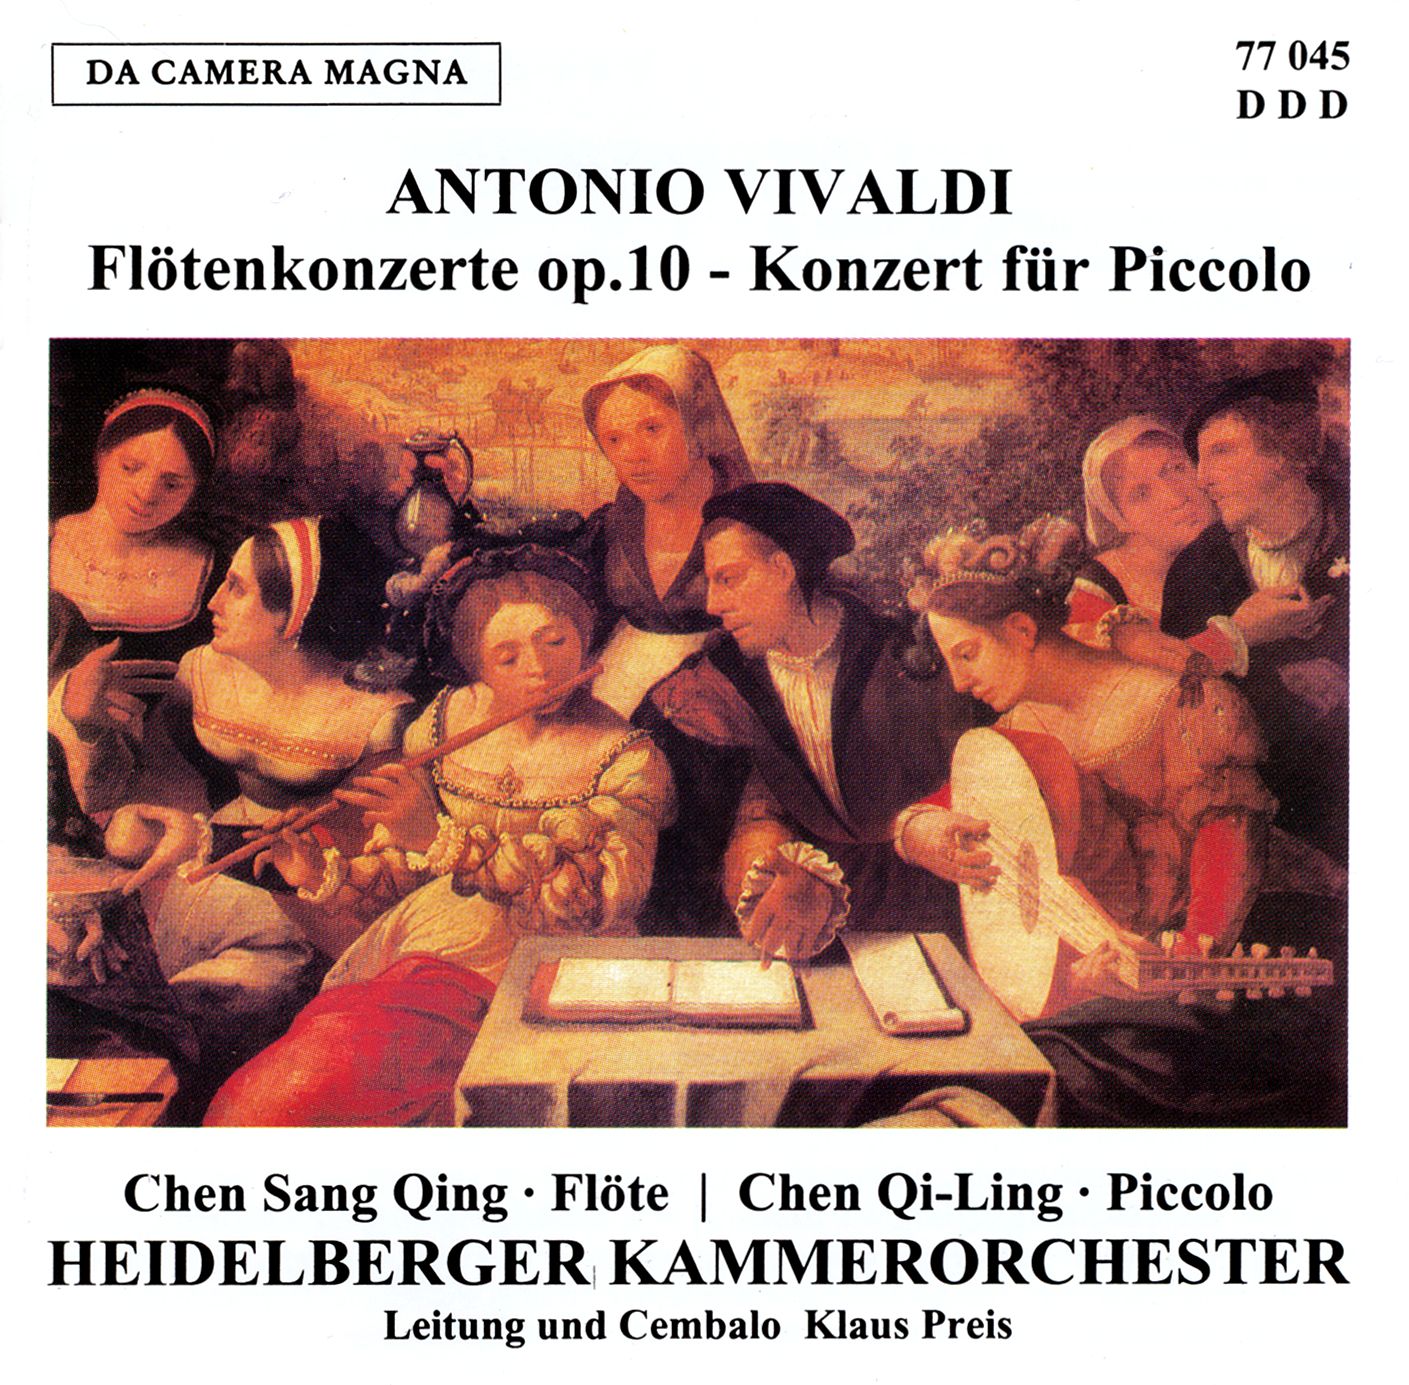 Antonio Vivaldi - Flötenkonzerte